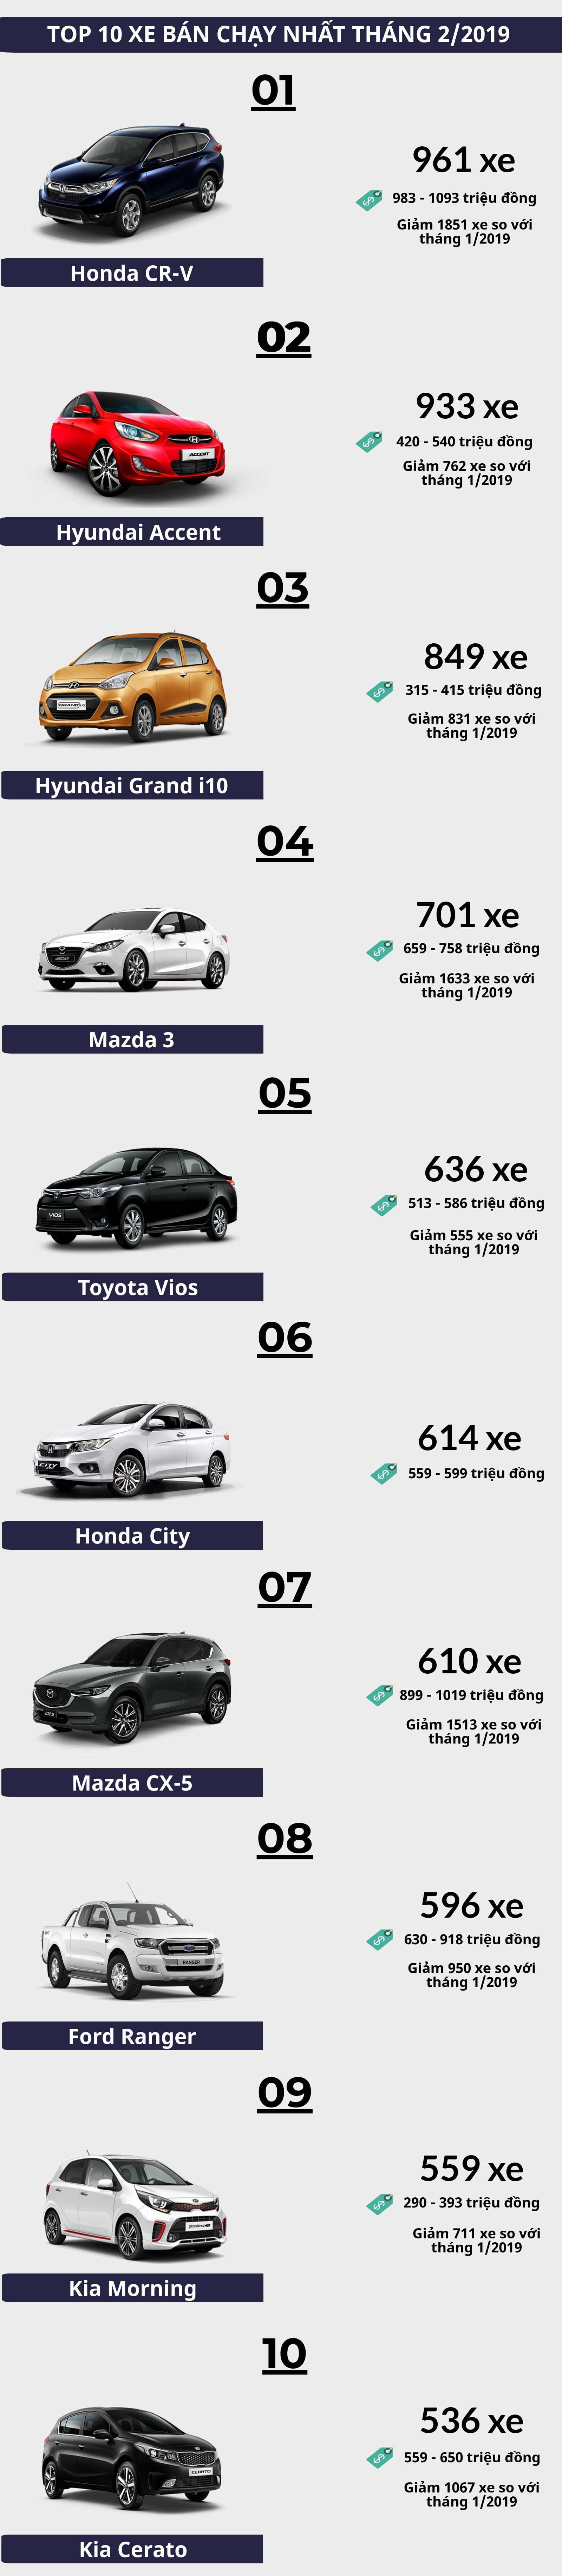 [Infographics] Top 10 xe bán chạy nhất tháng 2/2019